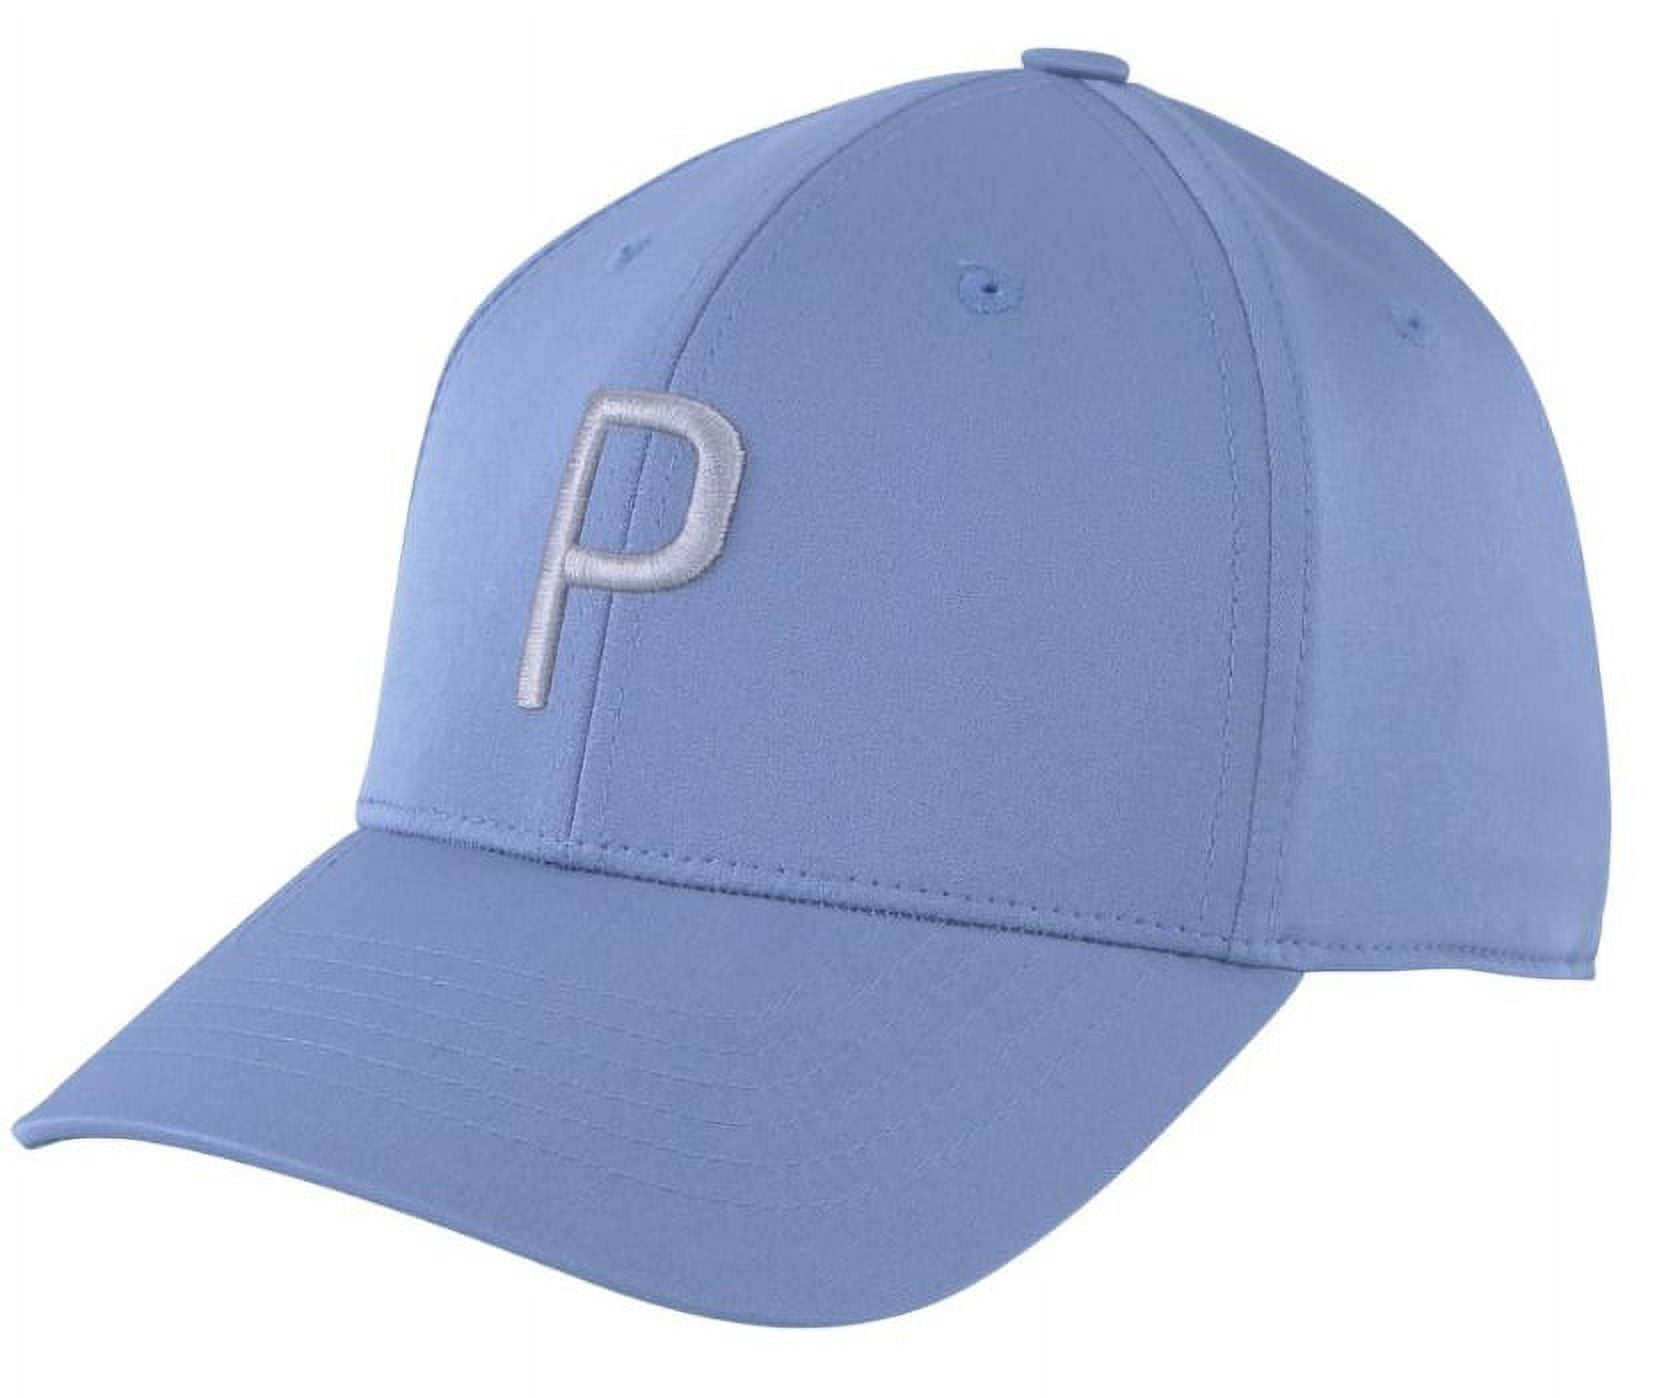 NEW Puma Structured P Cap Tropical Aqua/Navy Blazer Adjustable Golf Hat/Cap